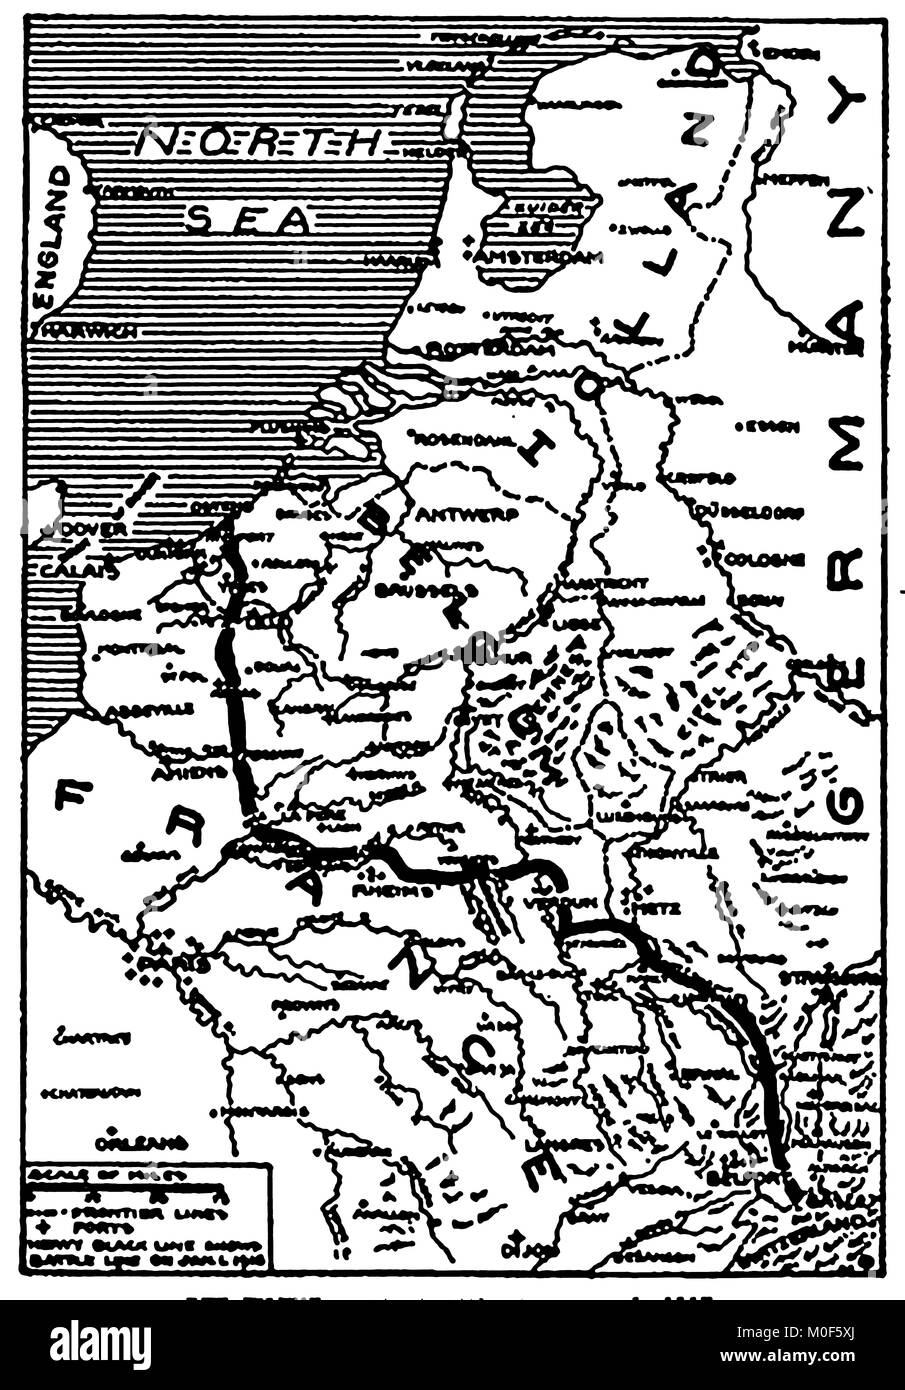 La PREMIÈRE GUERRE MONDIALE - UN 1917 Carte montrant l'activité militaire dans l'1914-1918 Première Guerre mondiale - La bataille de l'Ouest, la France et la Belgique au 1er janvier 1915 Banque D'Images